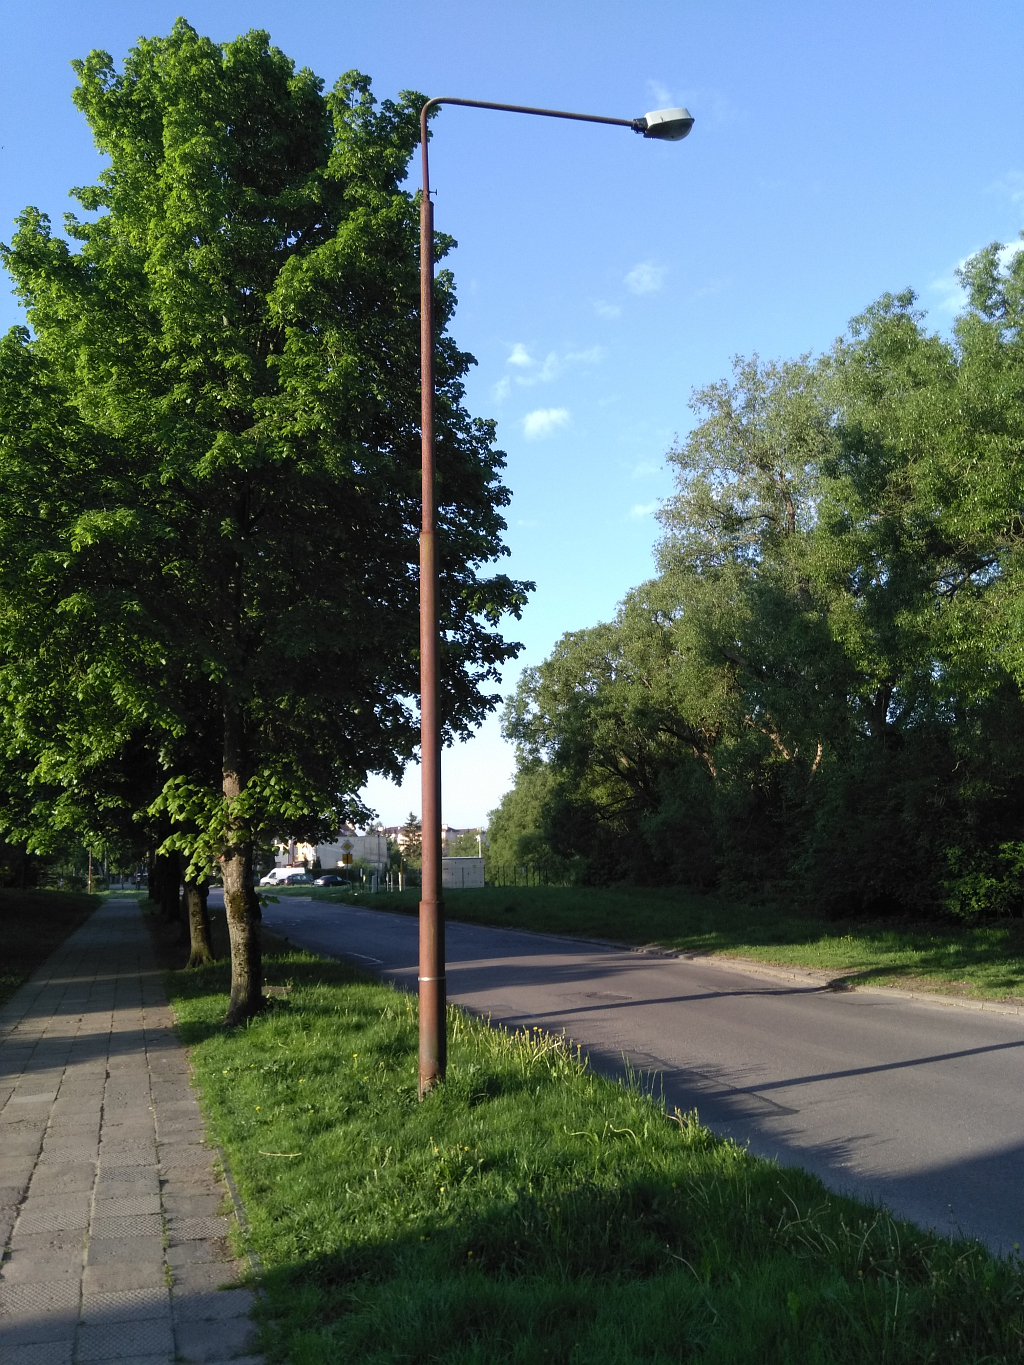 Lampa uliczna przy ul. Paderewskiego w Bartoszycach. Jej podstawa jest skorodowana.